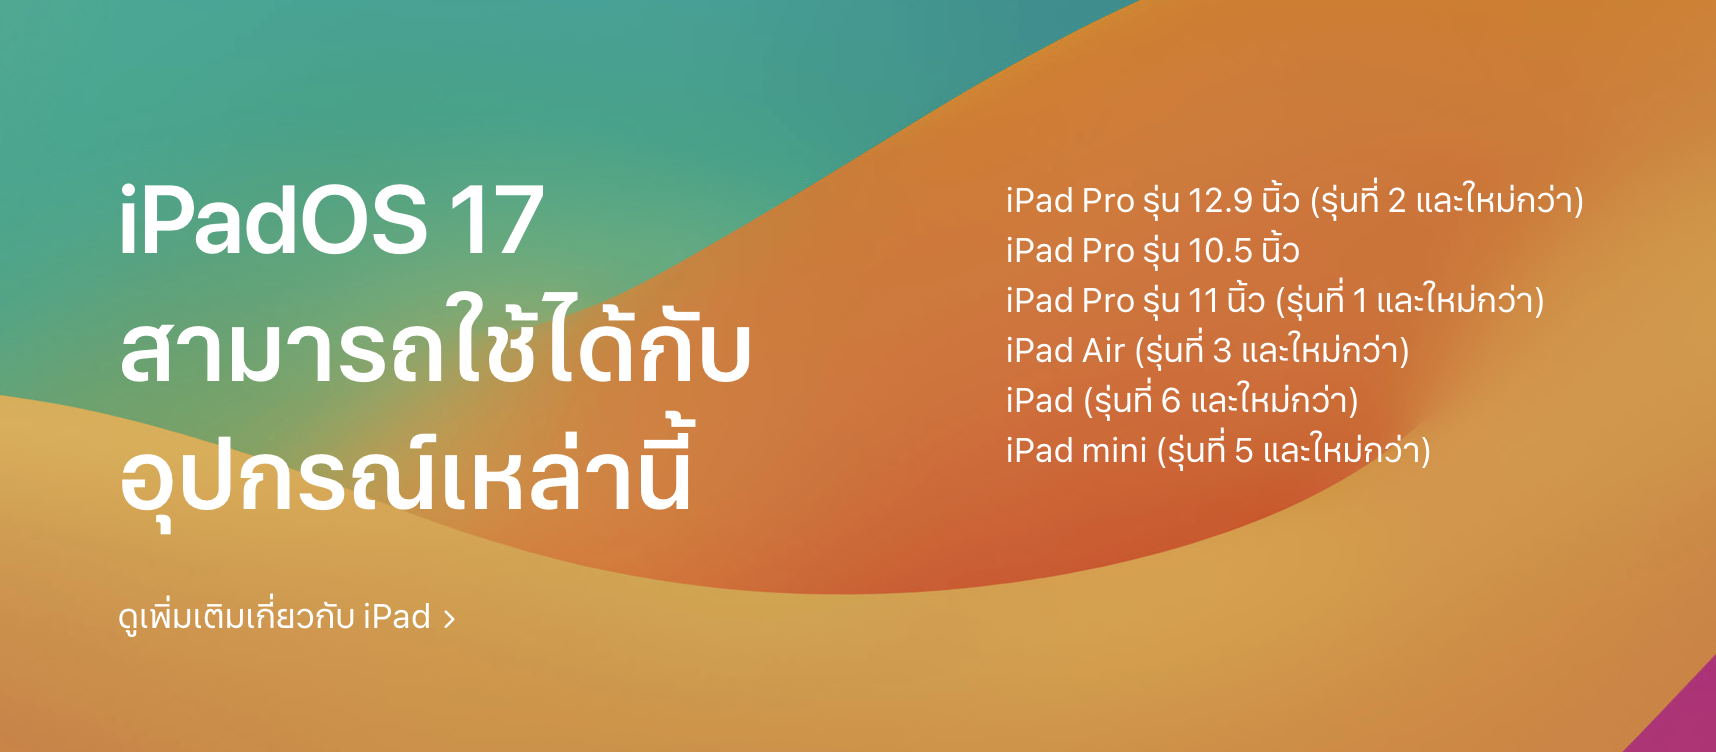 ภาพแสดงรุ่น iPad ที่อัปเดต iPadOS 17 ได้